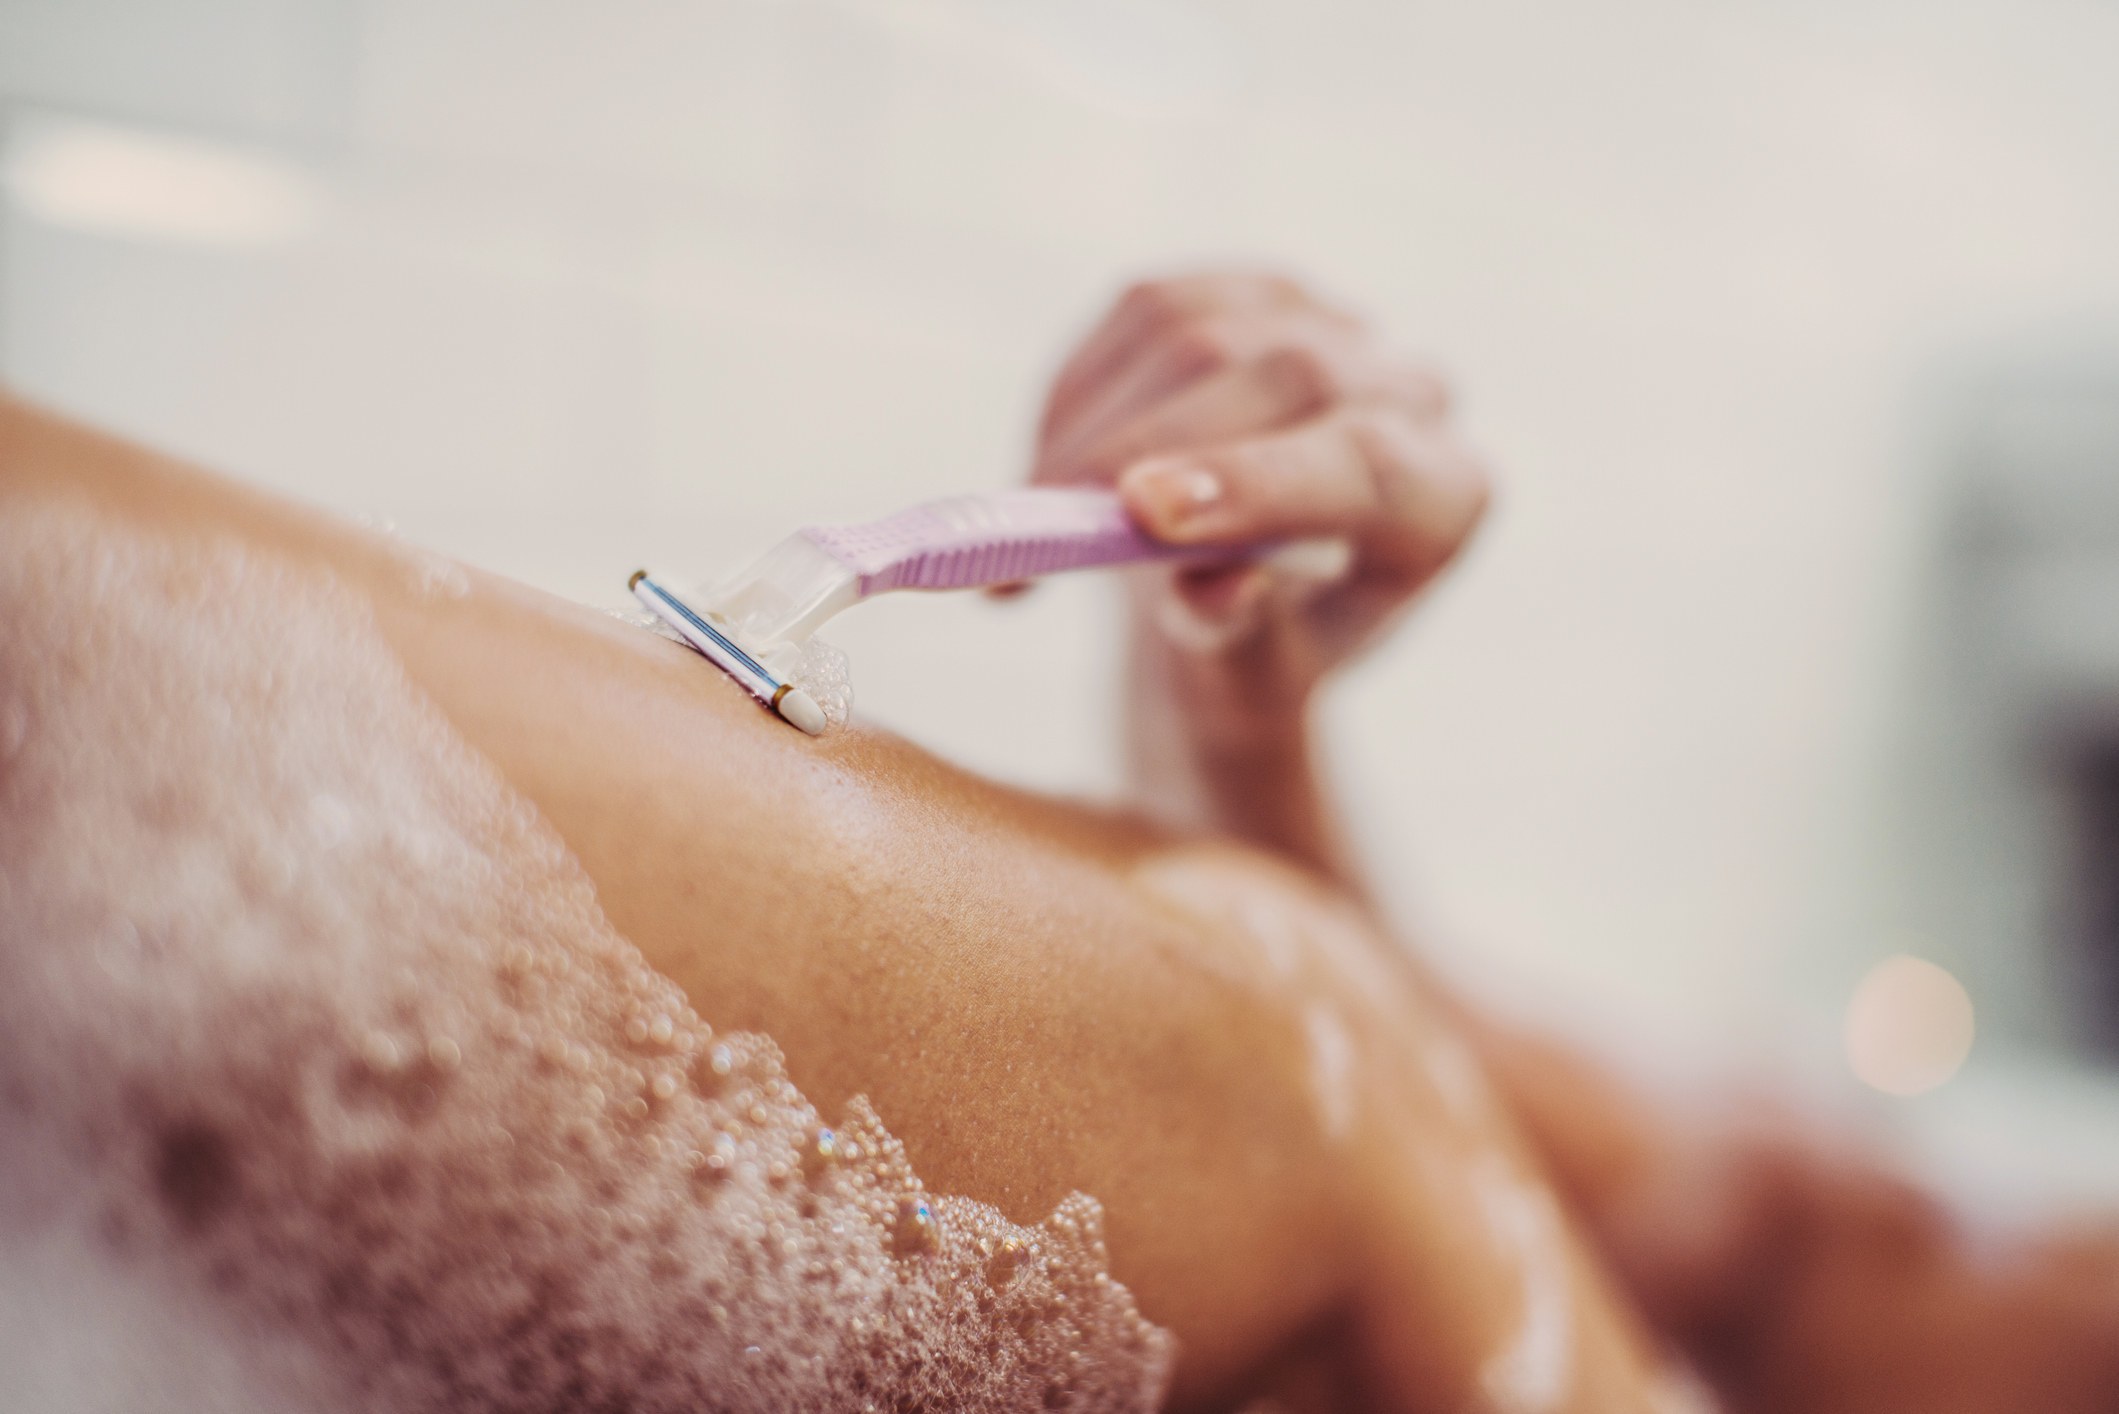 A woman shaving her legs in a bathtub